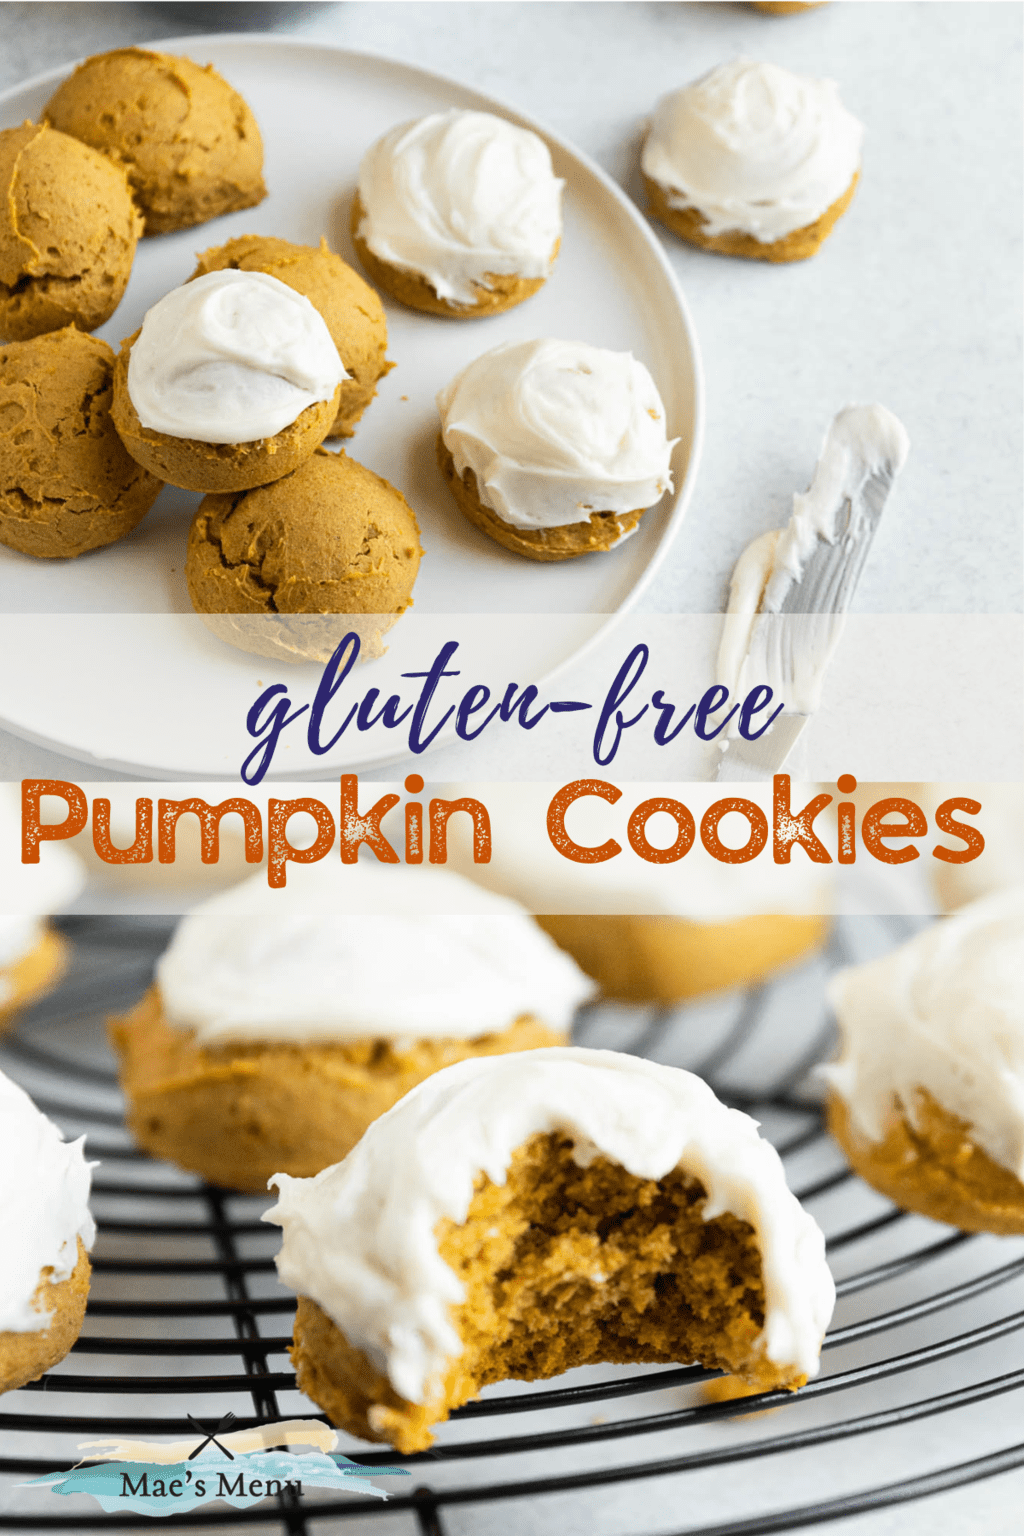 A pinterest pin for gluten-free pumpkin cookies.